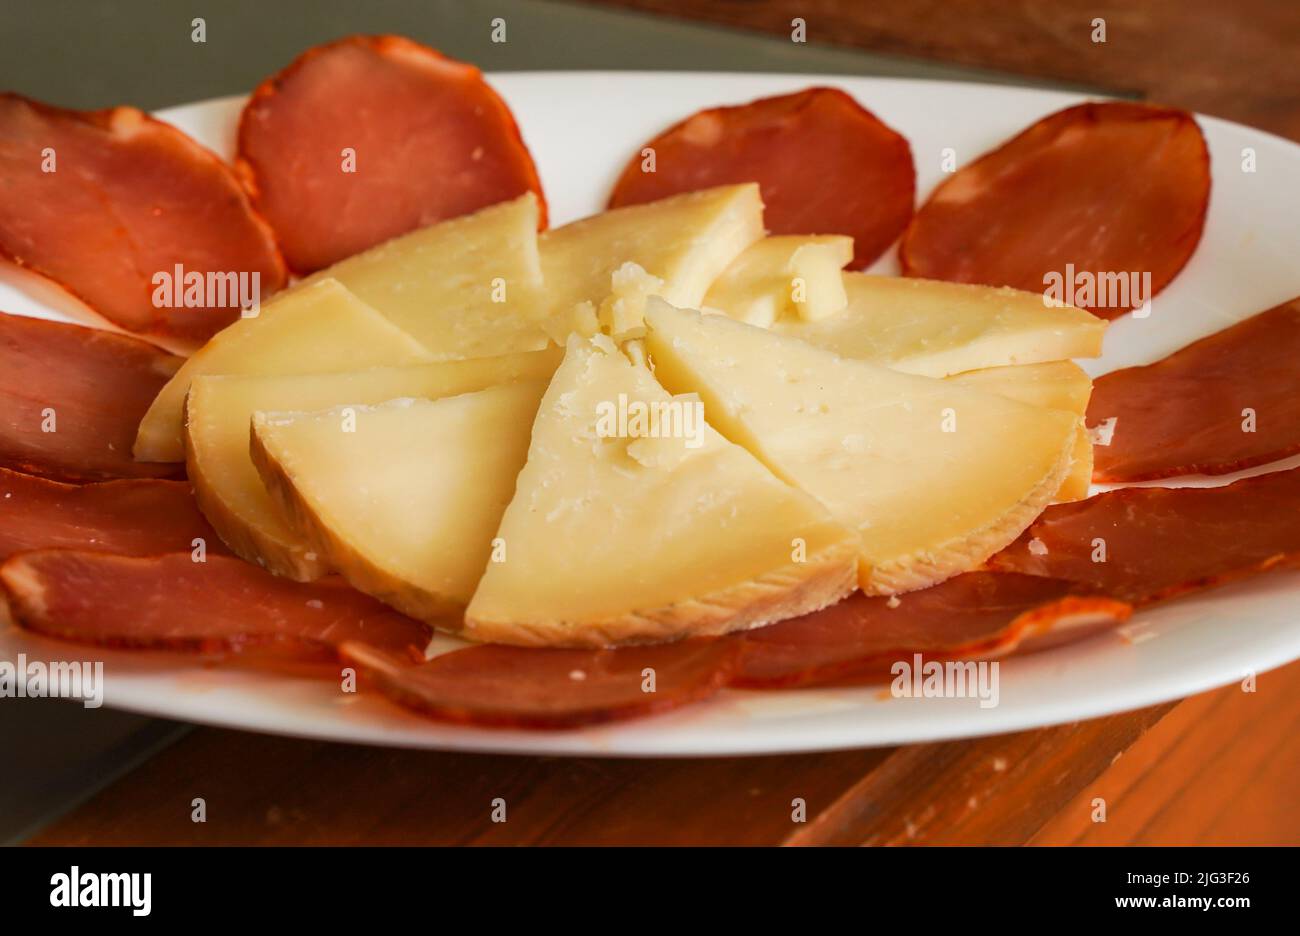 Manchego-Käse auf einem Bett aus Lomo, trockengeräucherter Wurst. Stockfoto